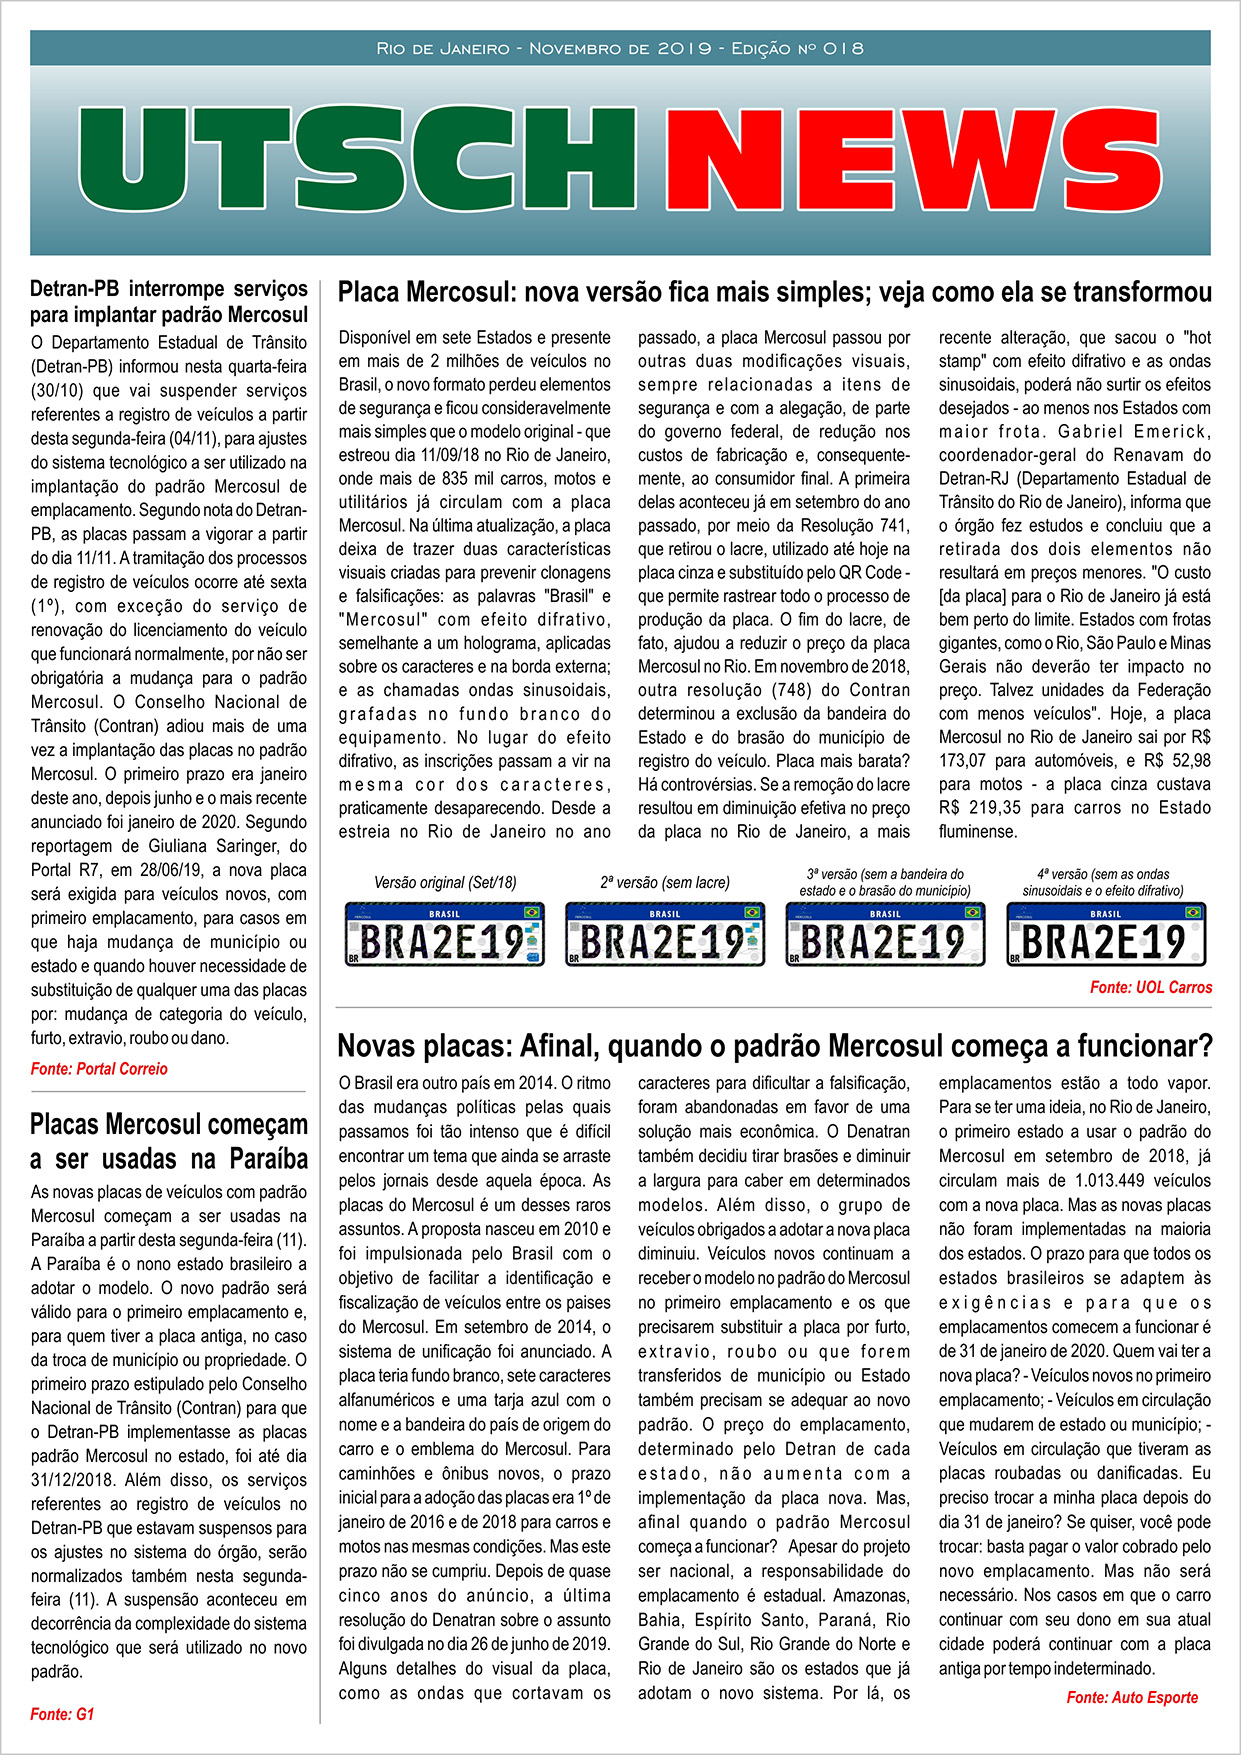 Jornal UTSCH BRASIL - edição 018 - Novembro_2019